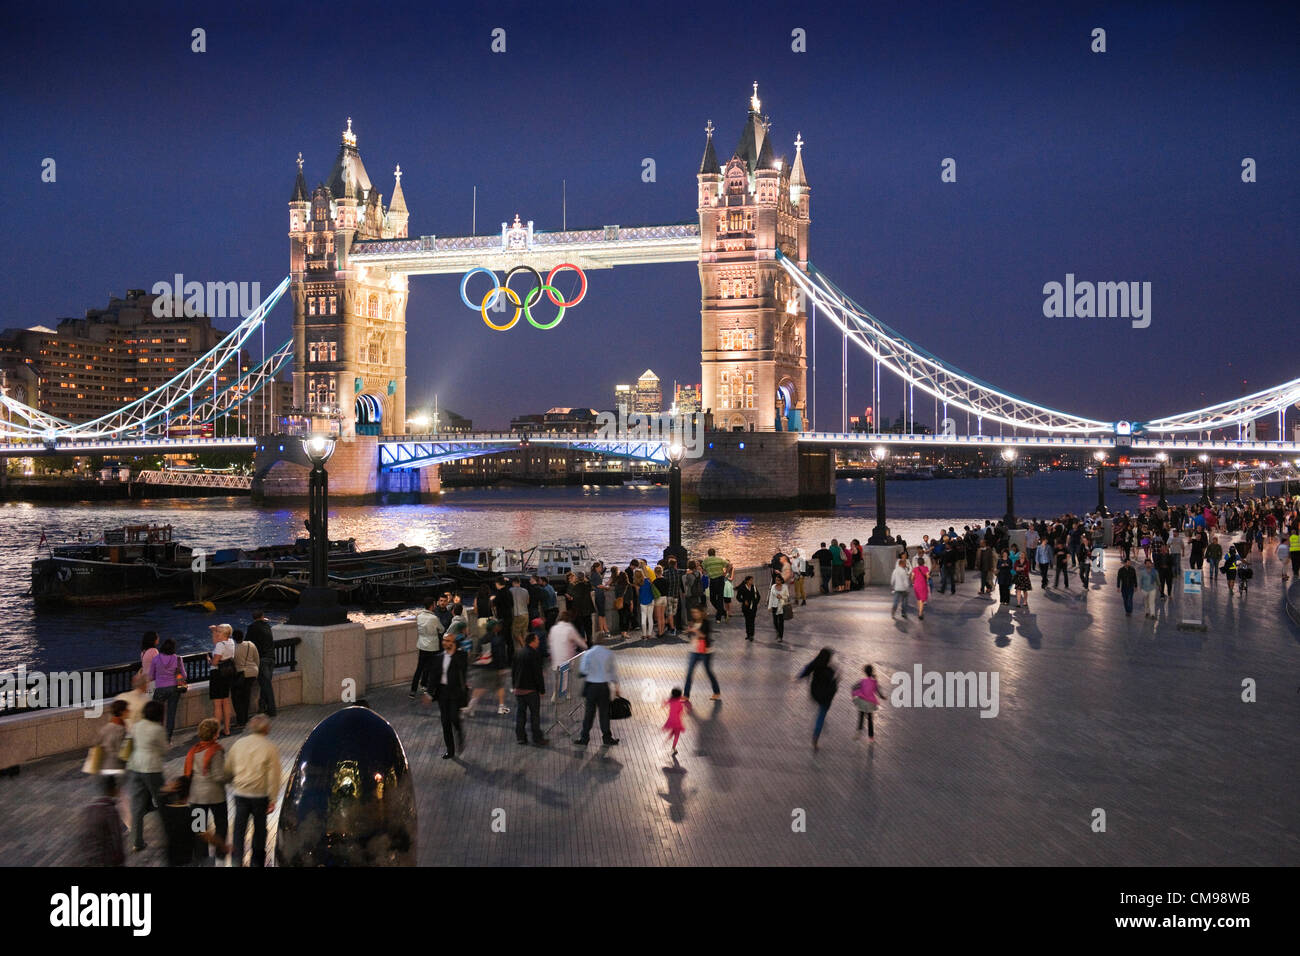 London, UK Wednesday27th Juni 2012. Im Anschluss an die Enthüllung der Olympischen Ringe auf Tower Bridge früher in den Tag Massen behandelt wurden, eine spektakuläre Vorschau des Licht-Show, die jede Nacht während der Olympischen Spiele spielen. London veranstaltet die 30. Olympischen Sommerspiele, die am 27. Juli 2012 beginnen. Stockfoto